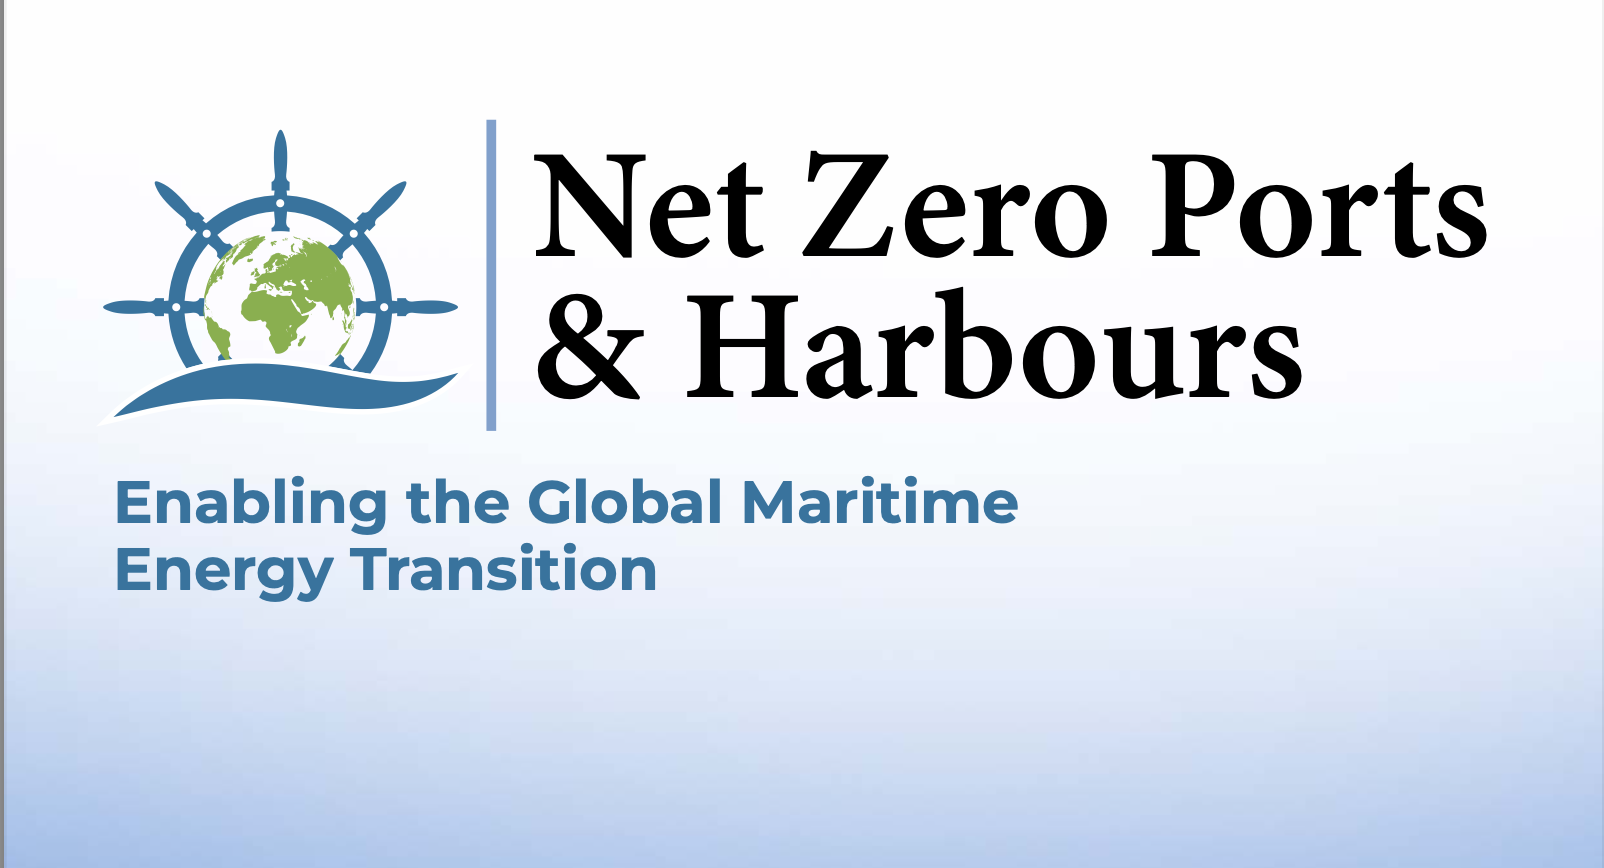 Net Zero Ports & Harbours Summit